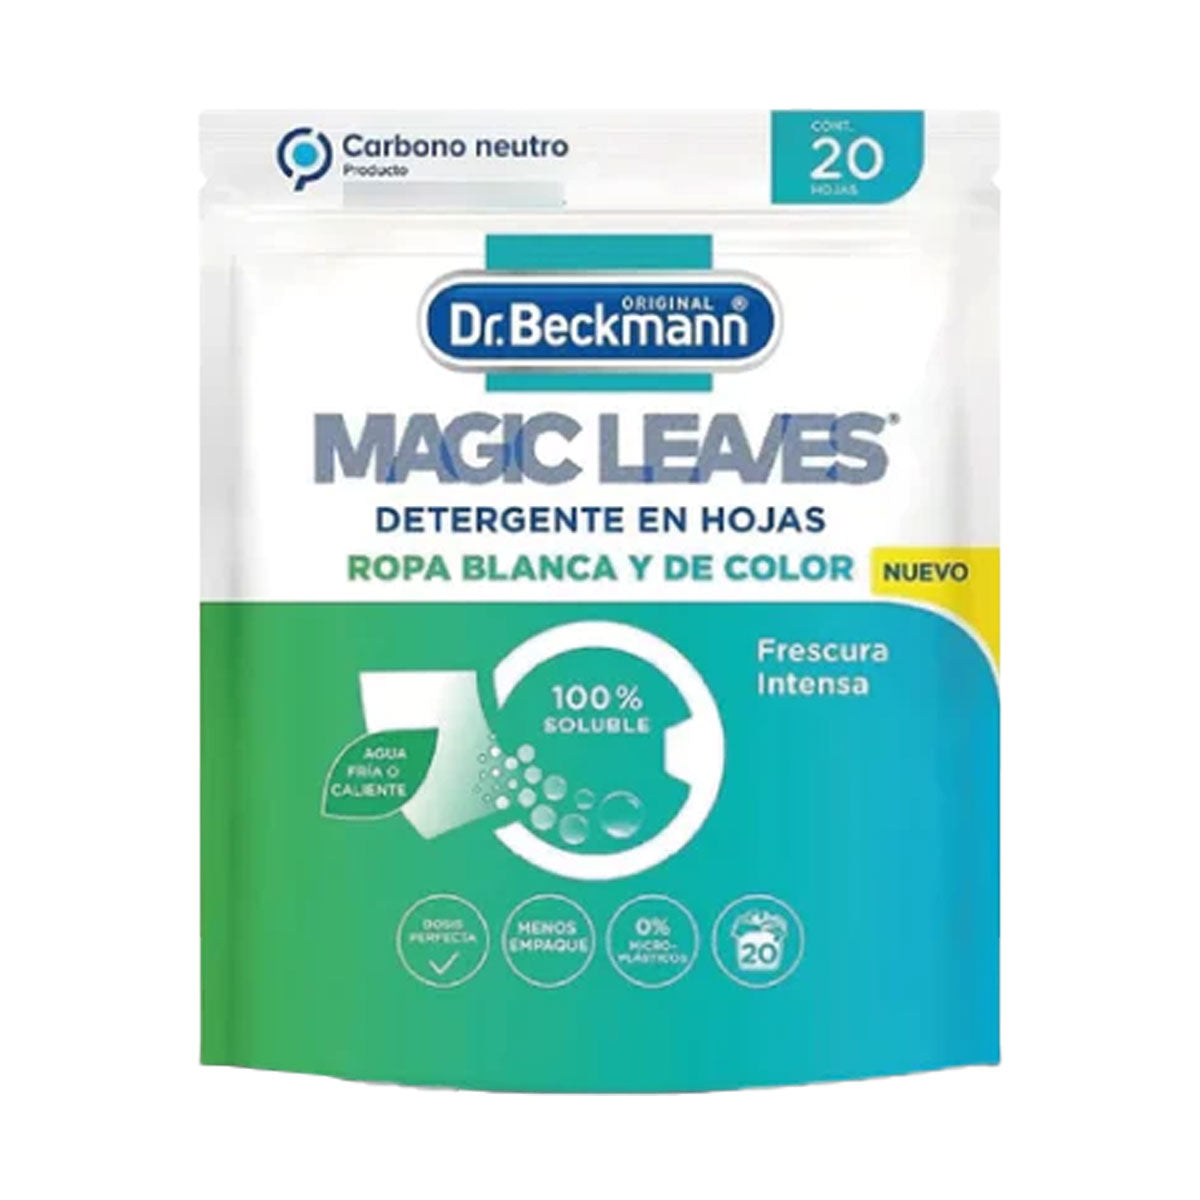 Detergente para ropa en hojas Magic Leaves, ropa blanca y color, 20 Hojas, Dr. Beckmann. Producto Alemán Sustentable